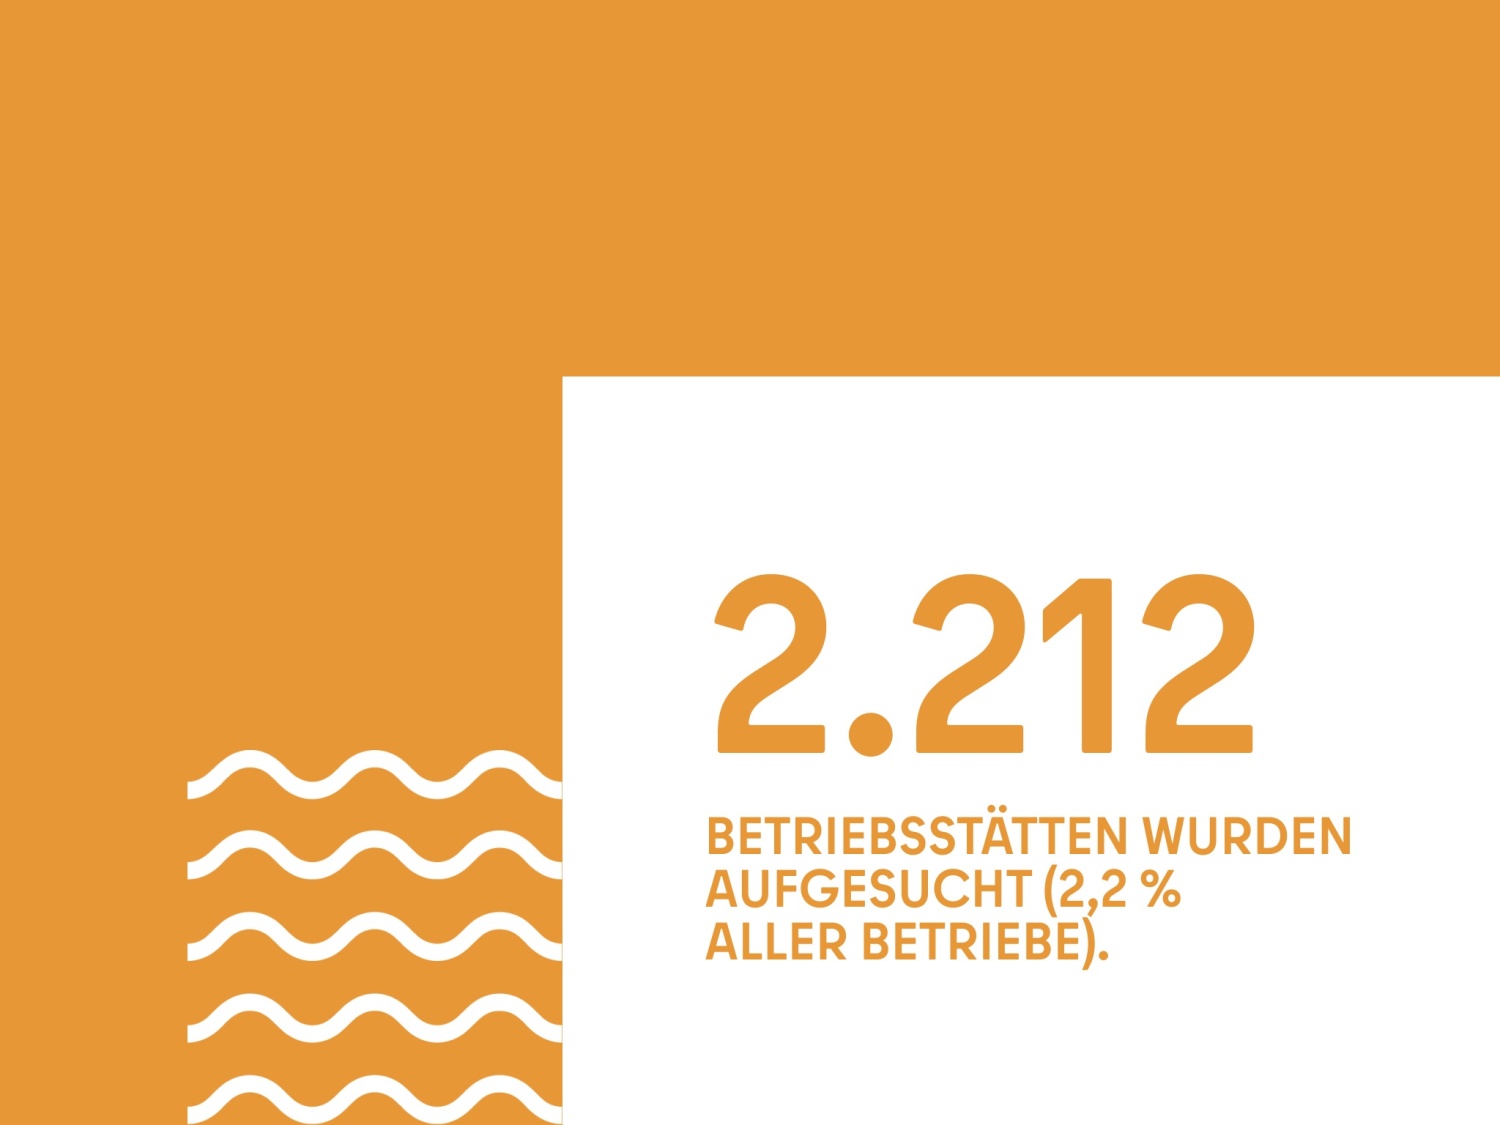 2.212 BETRIEBSSTÄTTEN WURDEN AUFGESUCHT (2,2 %  ALLER BETRIEBE).